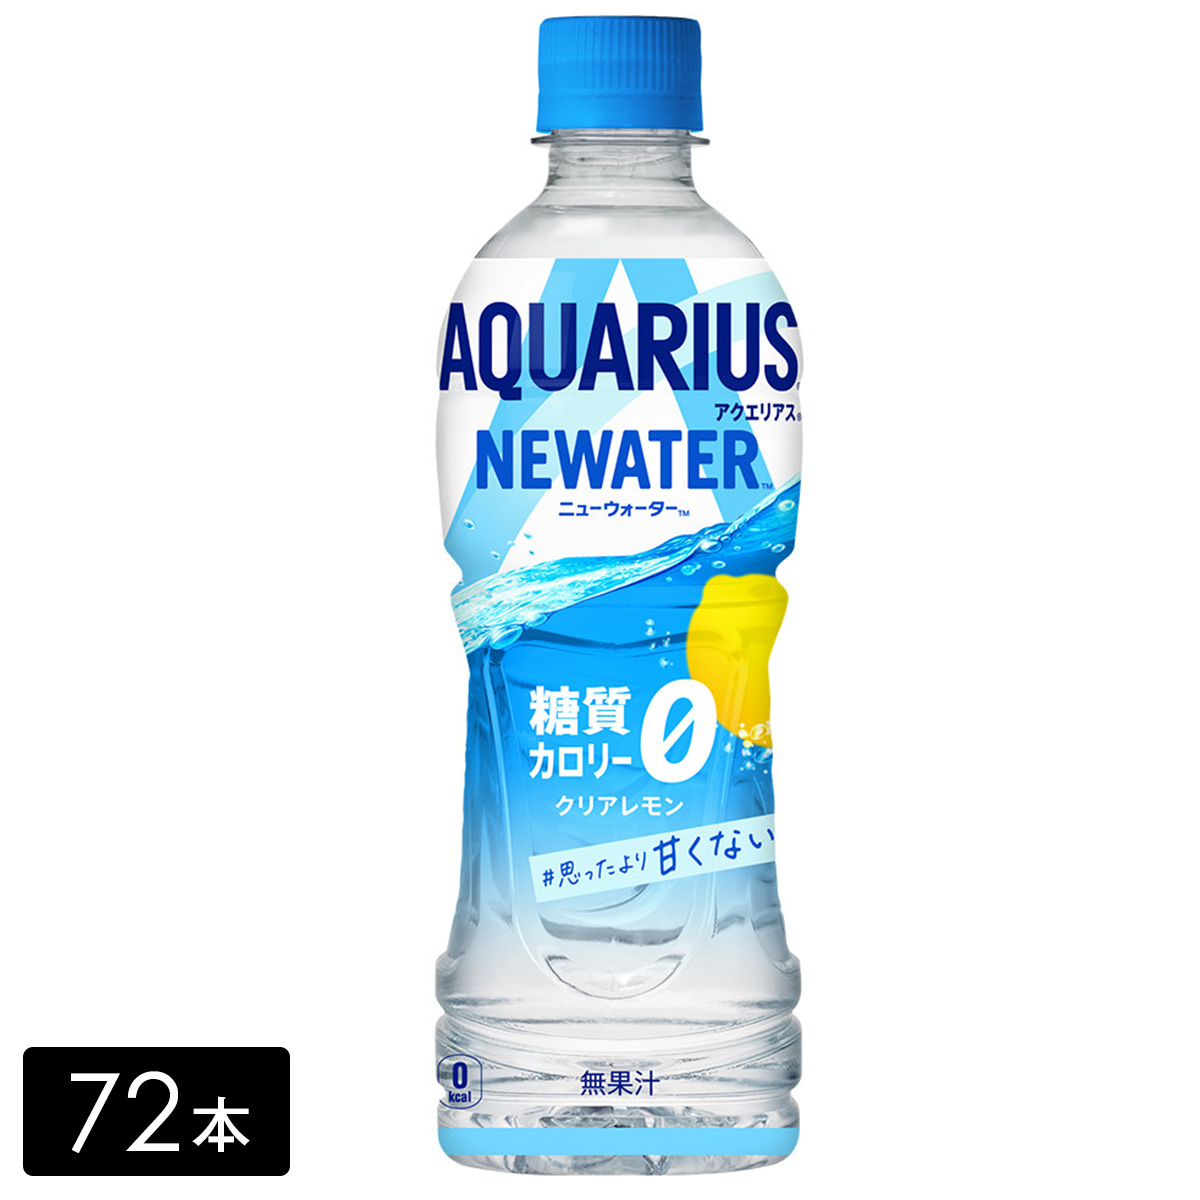 [送料無料]アクエリアス NEWATER(ニューウォーター) 500ml×72本(24本×3箱) カロリーゼロ 糖質ゼロ 熱中症対策 水分補給 AQUARIUS ペットボトル ケース売り まとめ買い